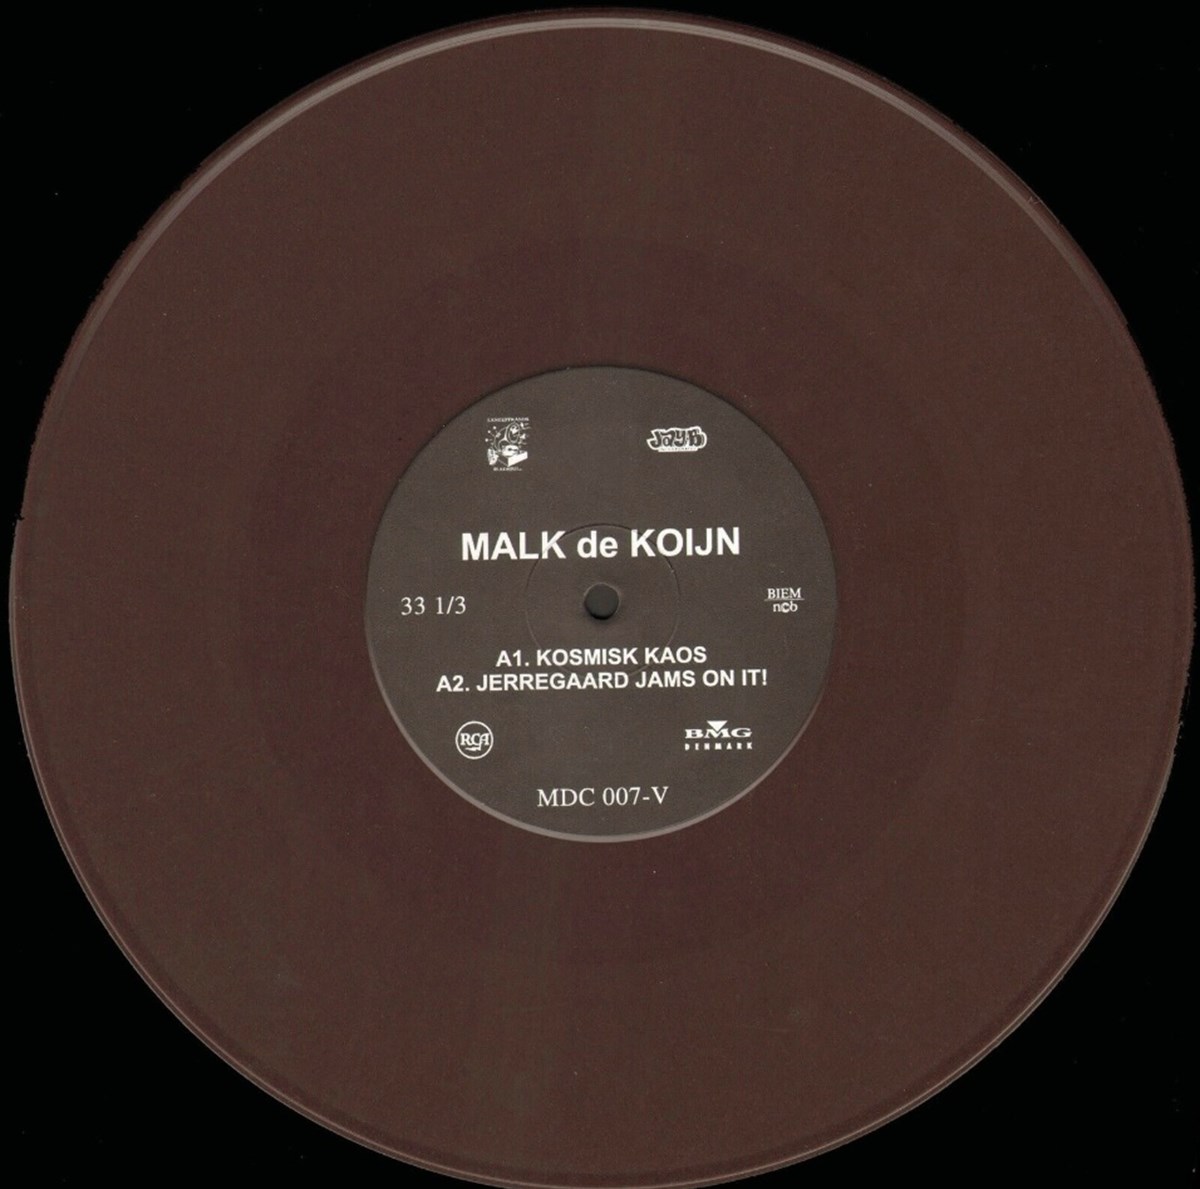 For 3.000 kroner kan du blive den nye ejermand af denne EP fra Malk de Koijn, som hedder 'Kosmisk Kaos'. Den har en DBA-sælger fra Brønshøj til salg på DBA